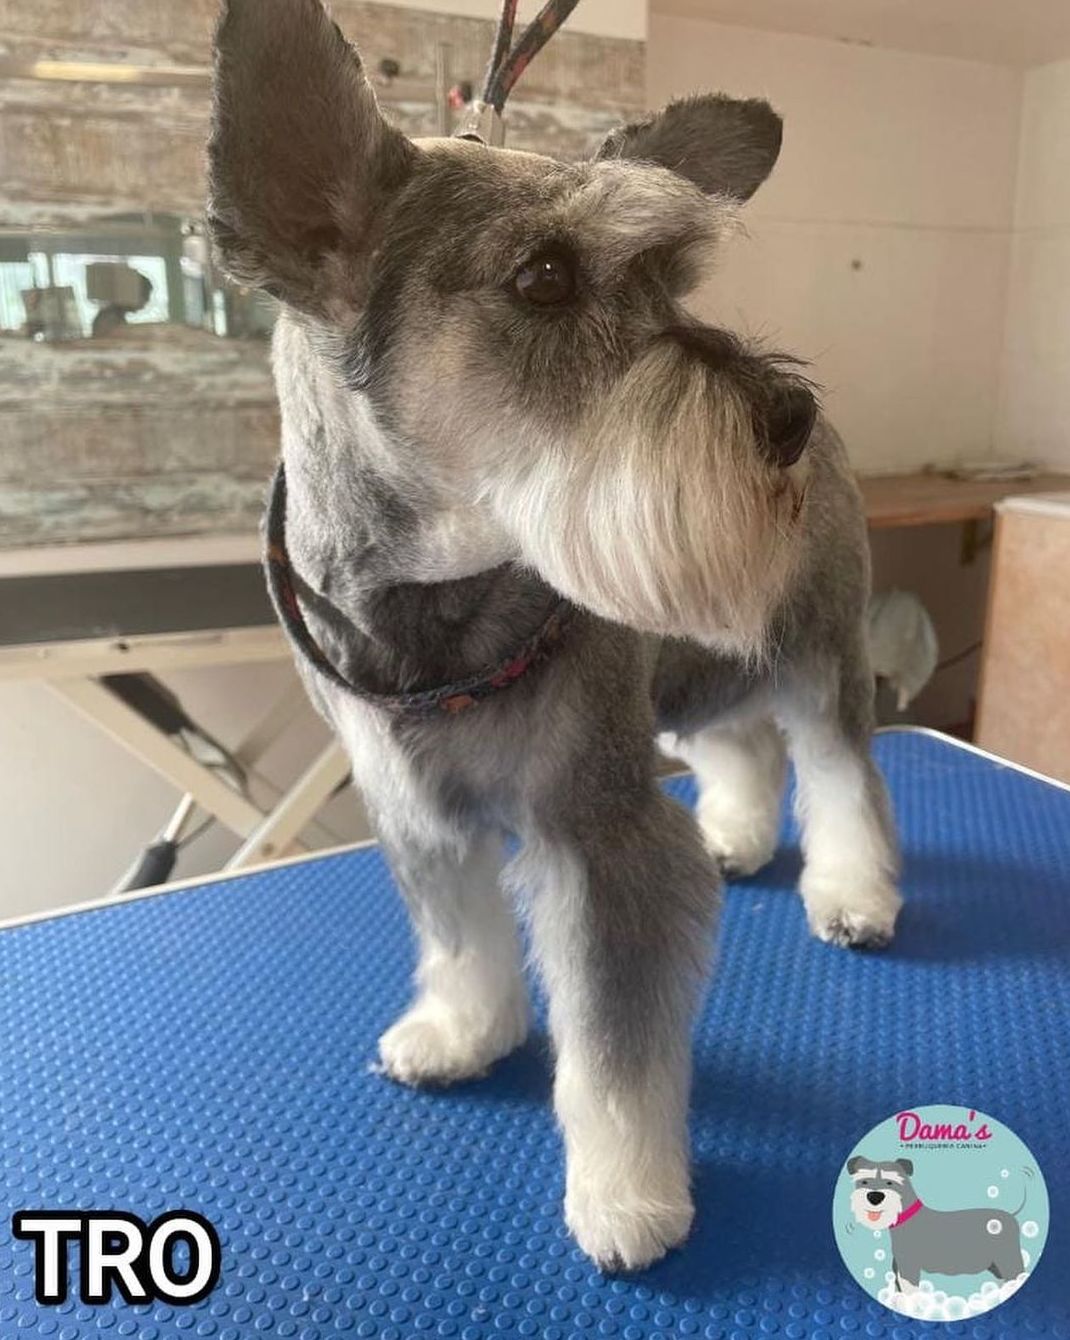 Foto 99 de Peluquería canina con todo tipo de tratamientos para tu mascota en  | Dama's